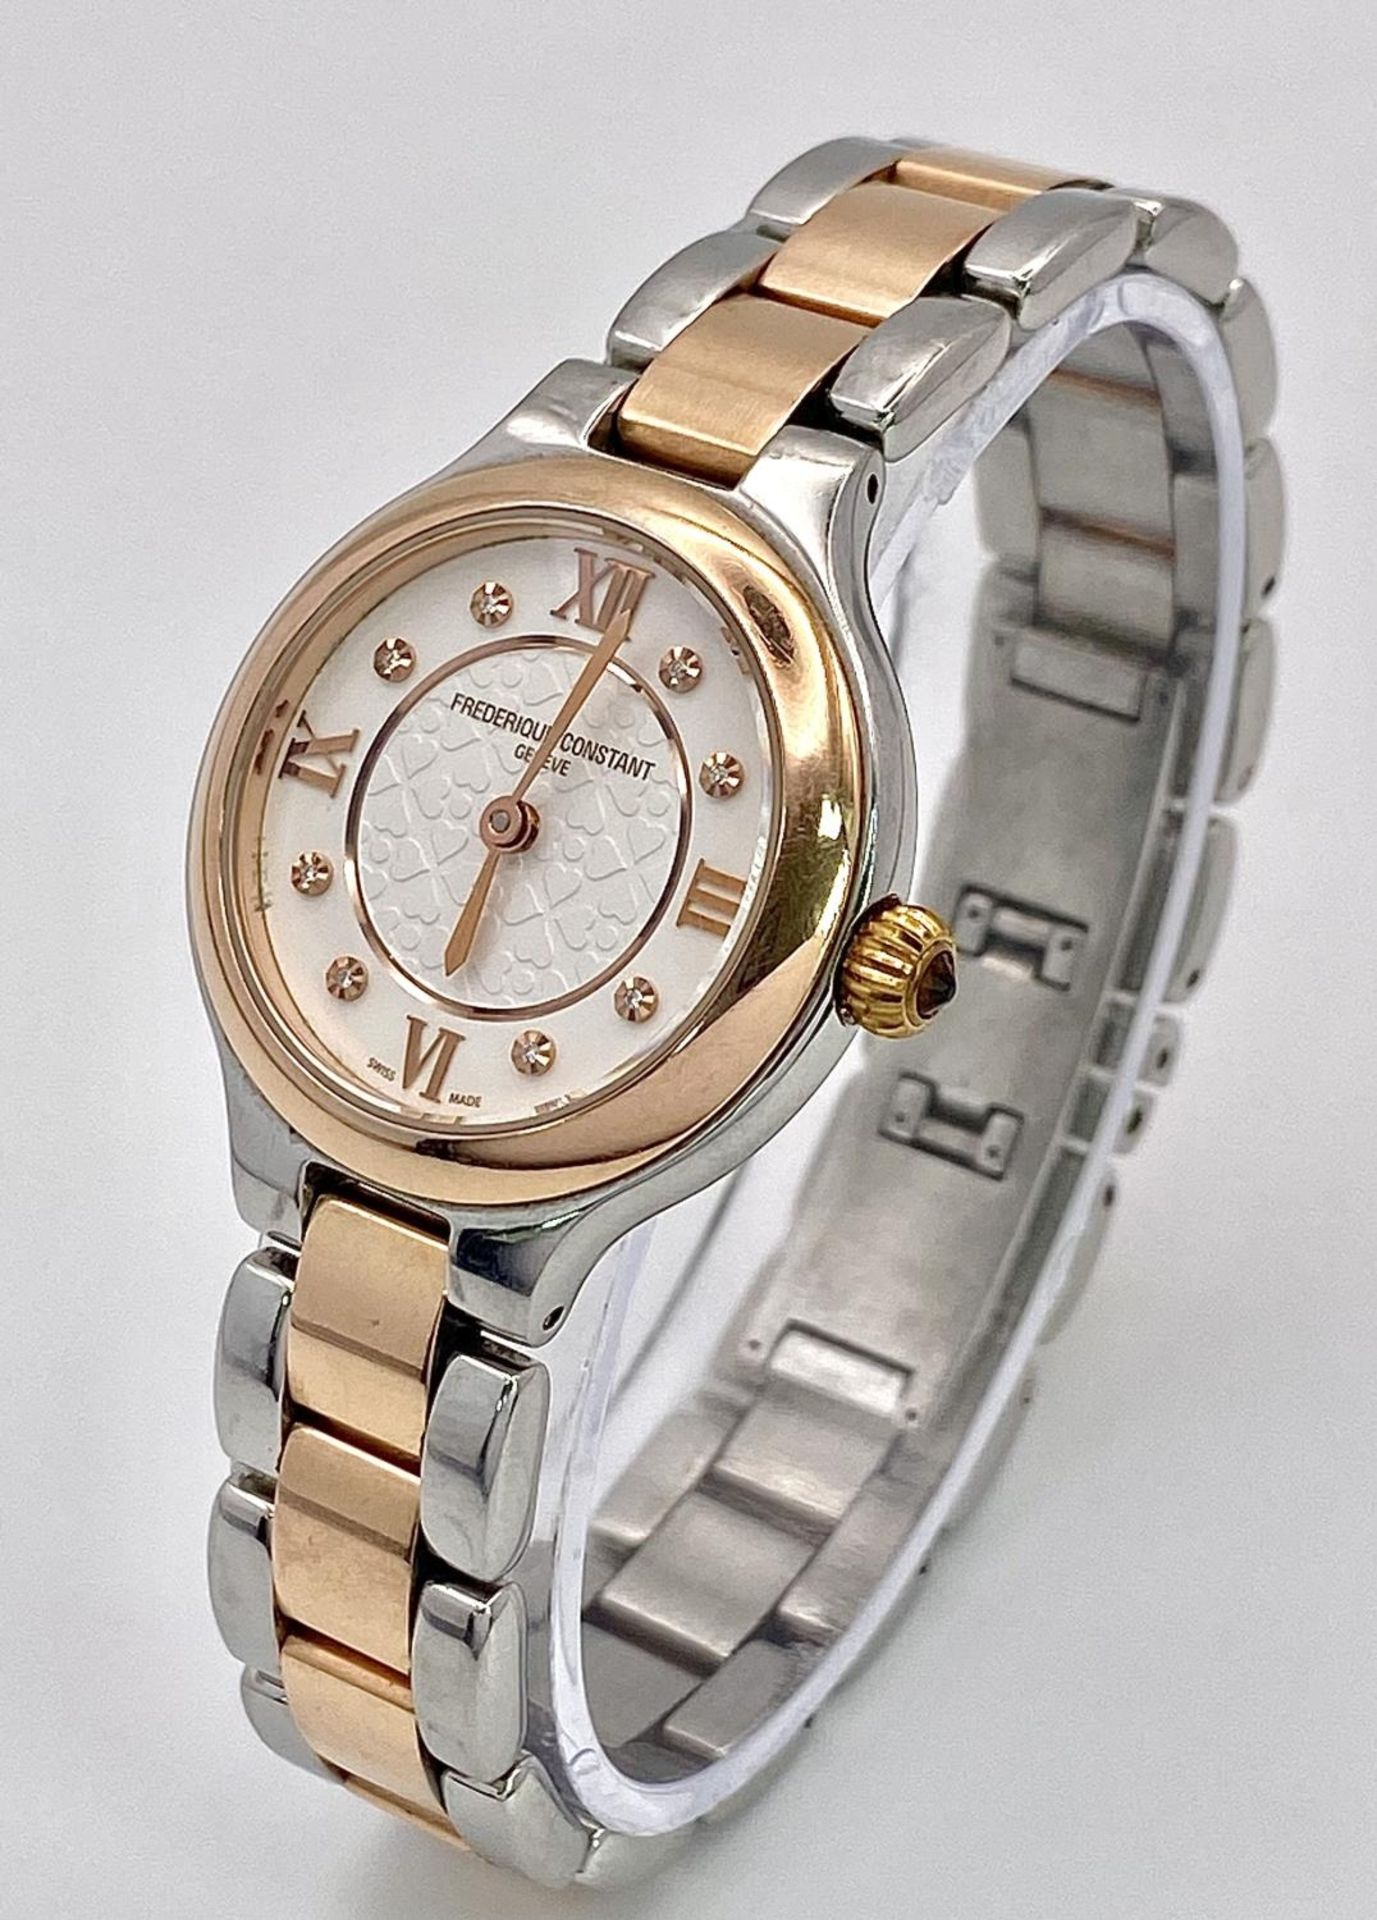 A Frederique Constant Quartz Ladies Watch. Two tone bracelet and case - 28mm. White stone set